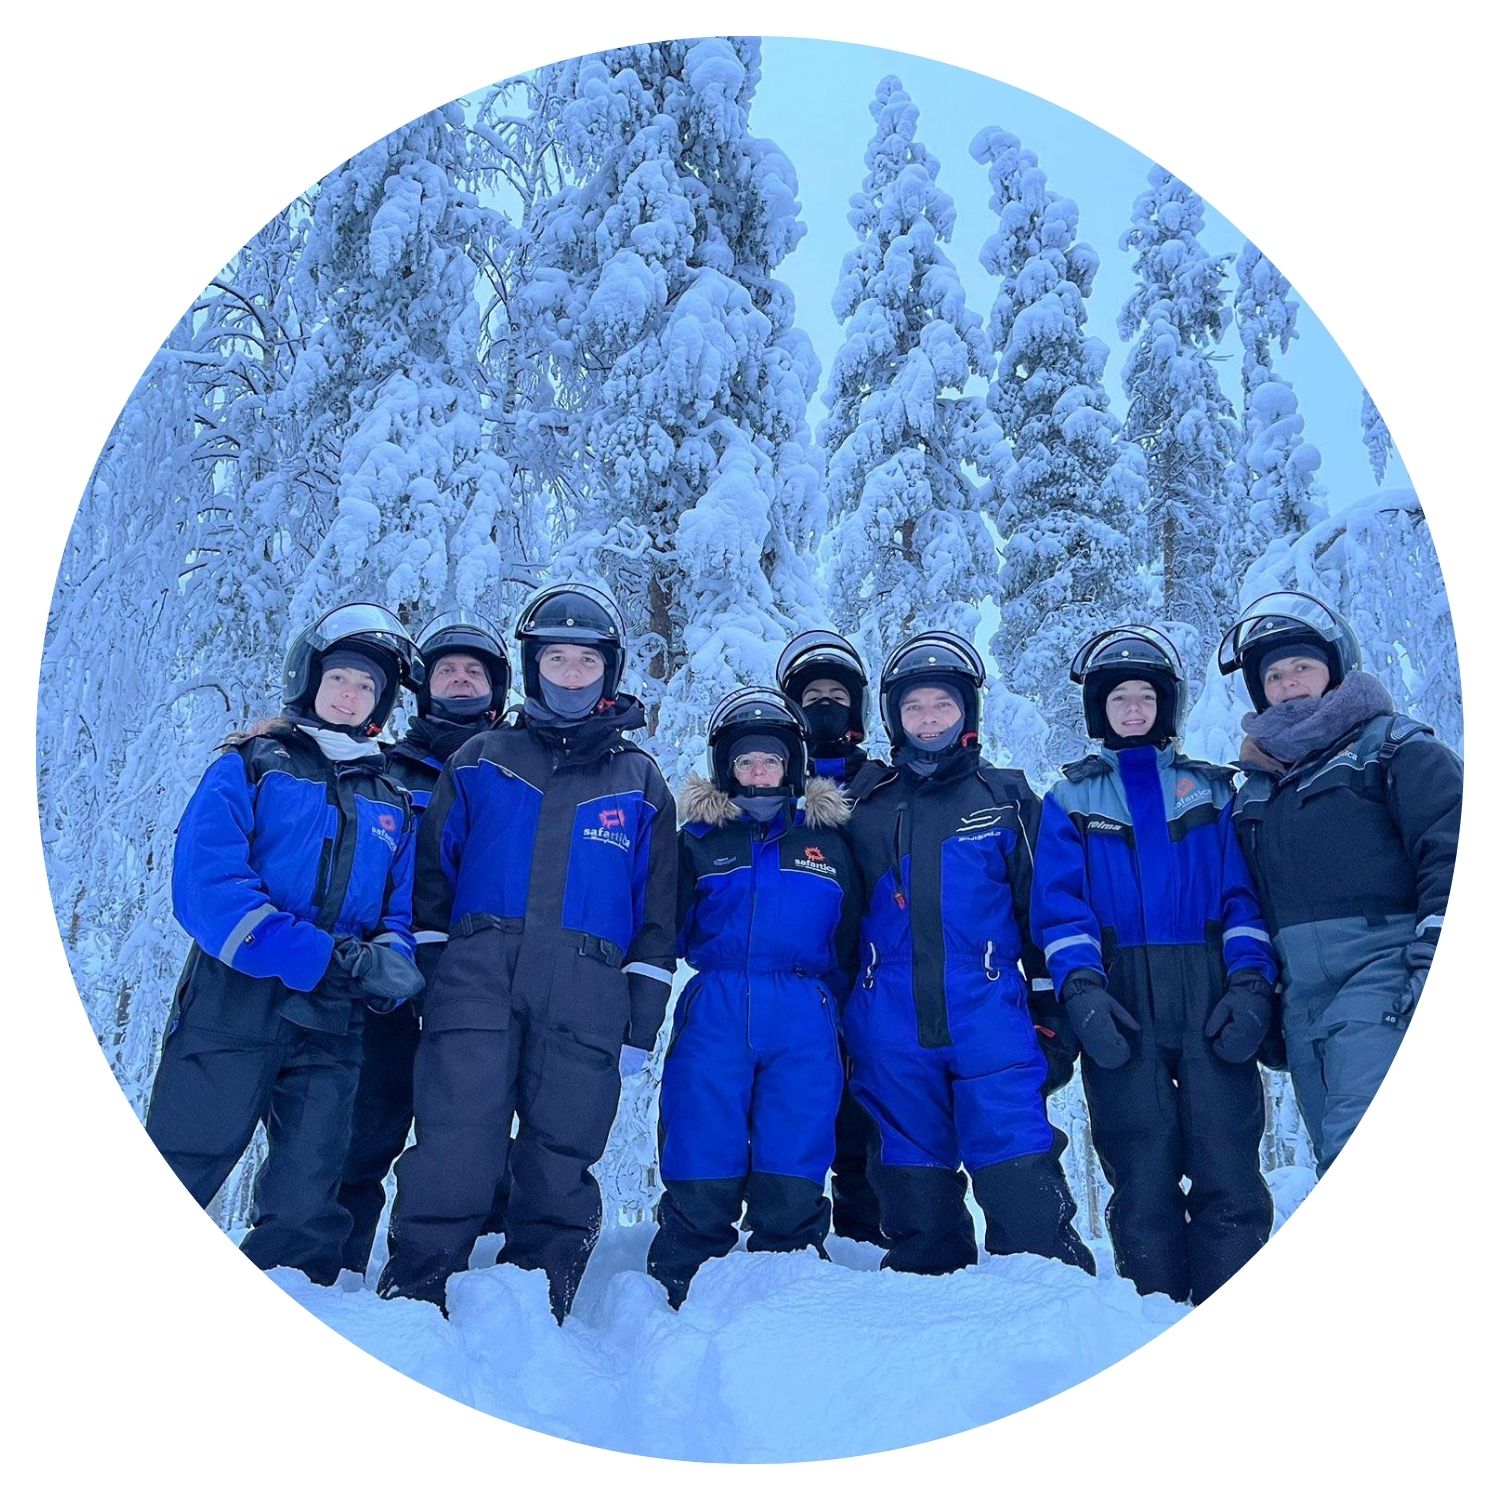 Un groupe familial souriant prend une photo de groupe après une balade mémorable dans la forêt enneigée de Finlande, capturant l'esprit de l'aventure hivernale.